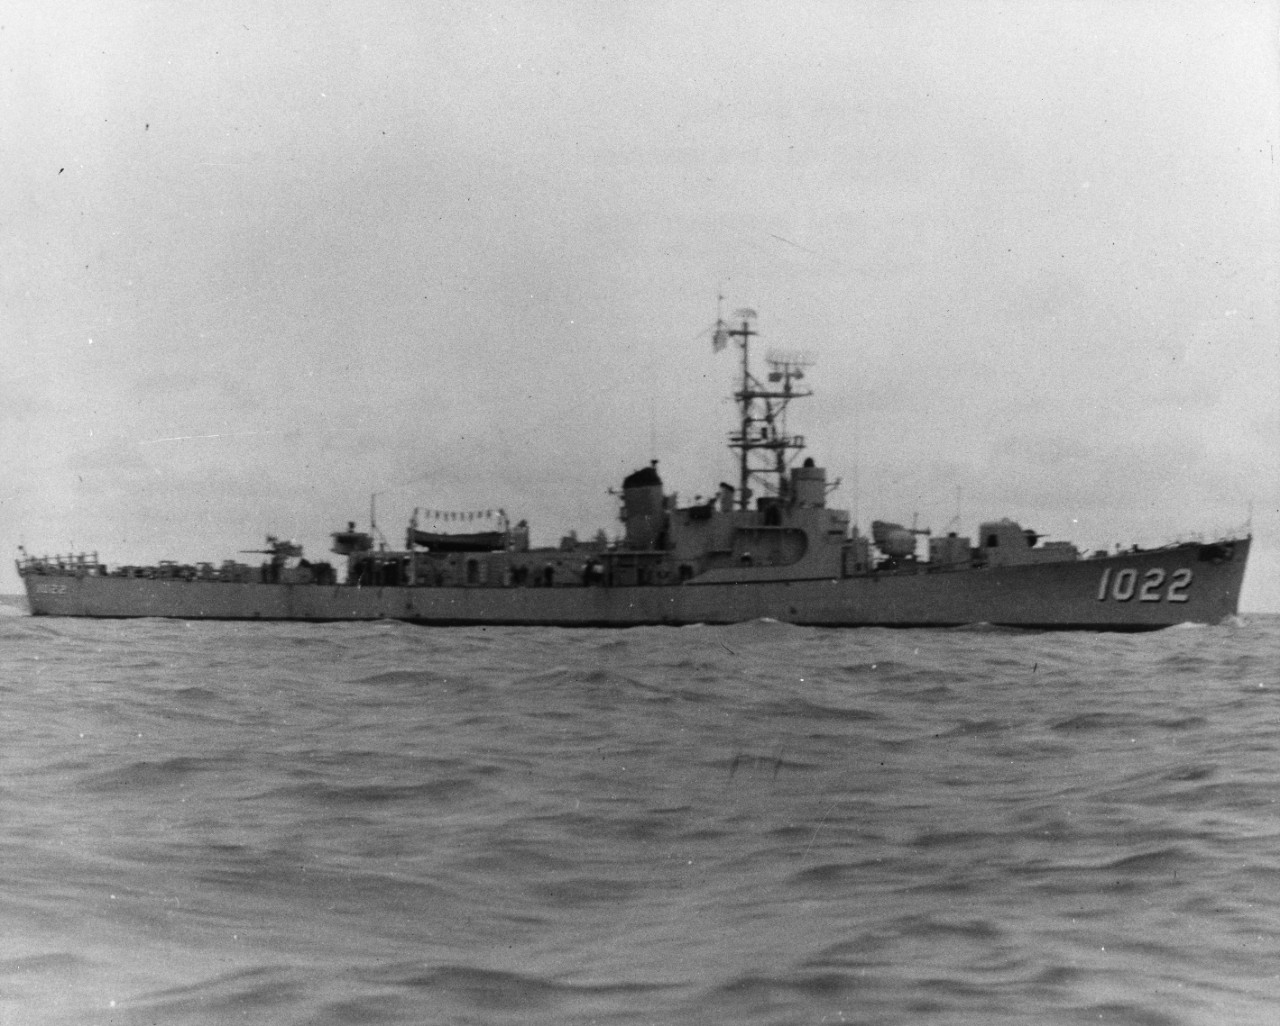 USS Lester (DE-1022)